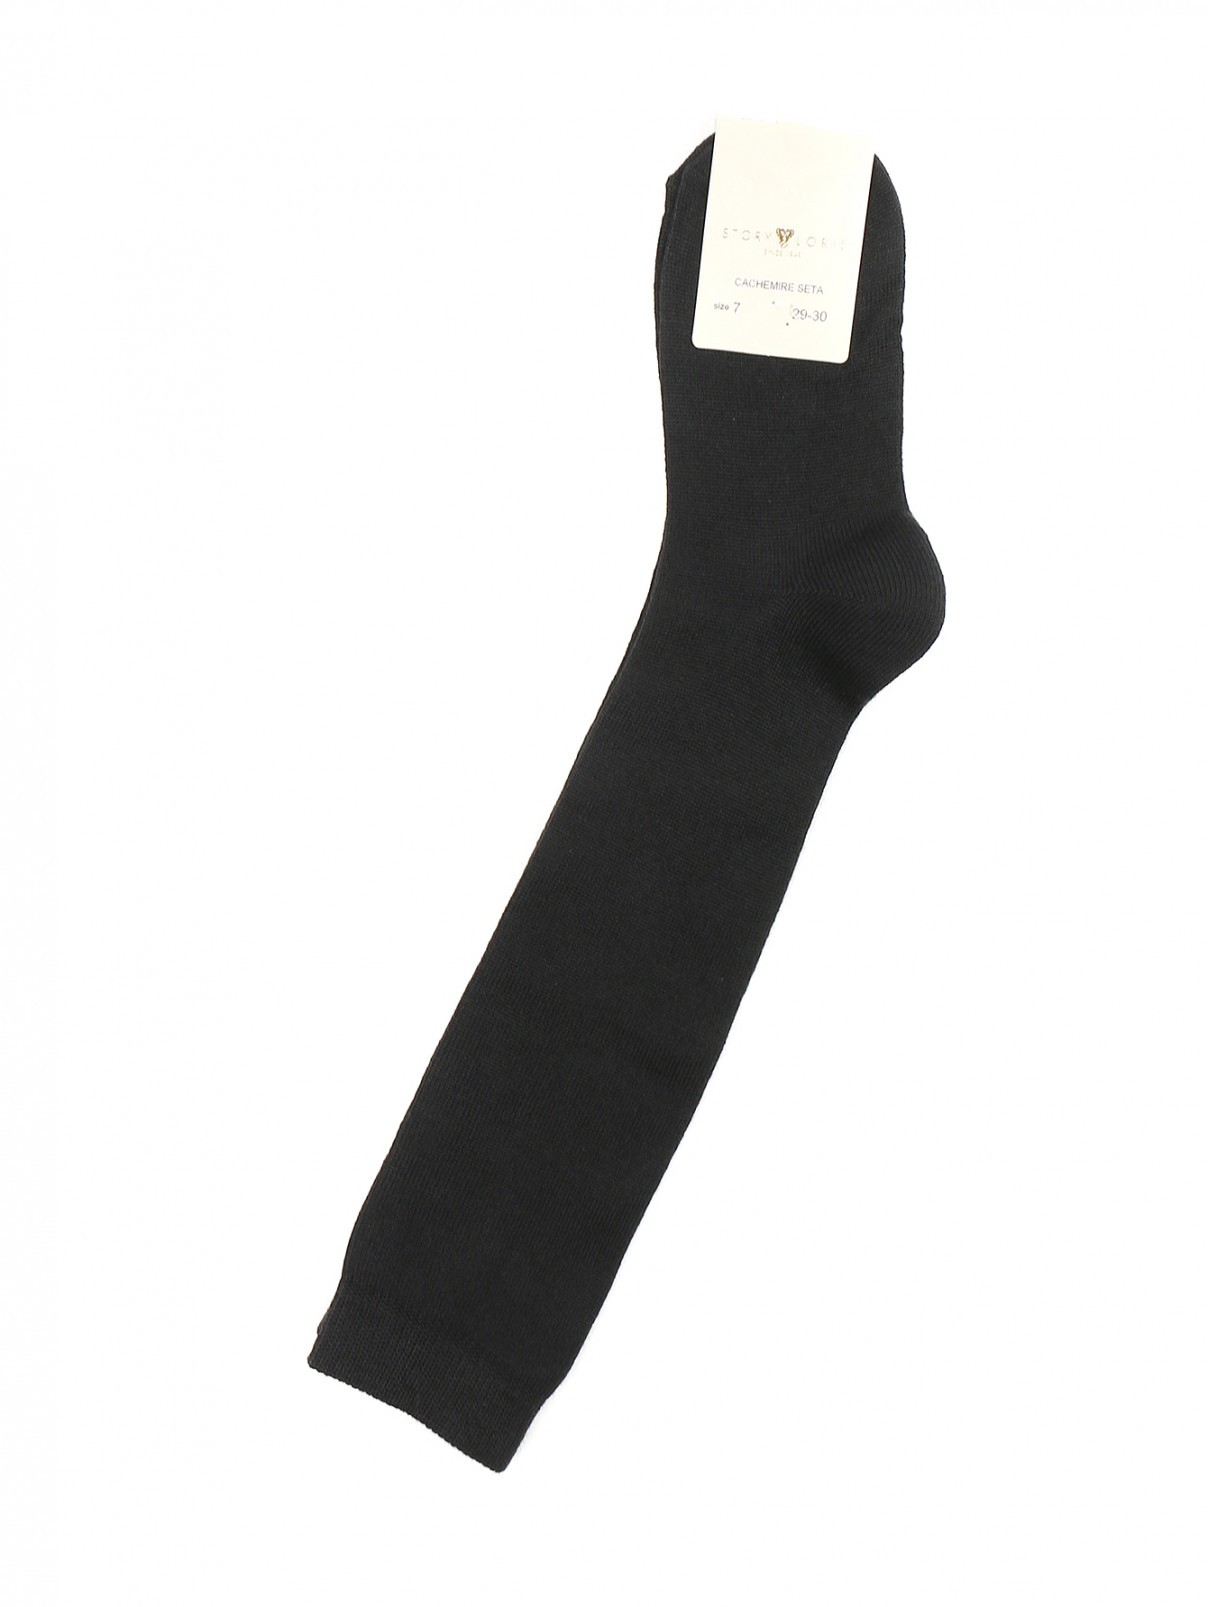 Носки из кашемира и шелка Story Loris  –  Общий вид  – Цвет:  Черный